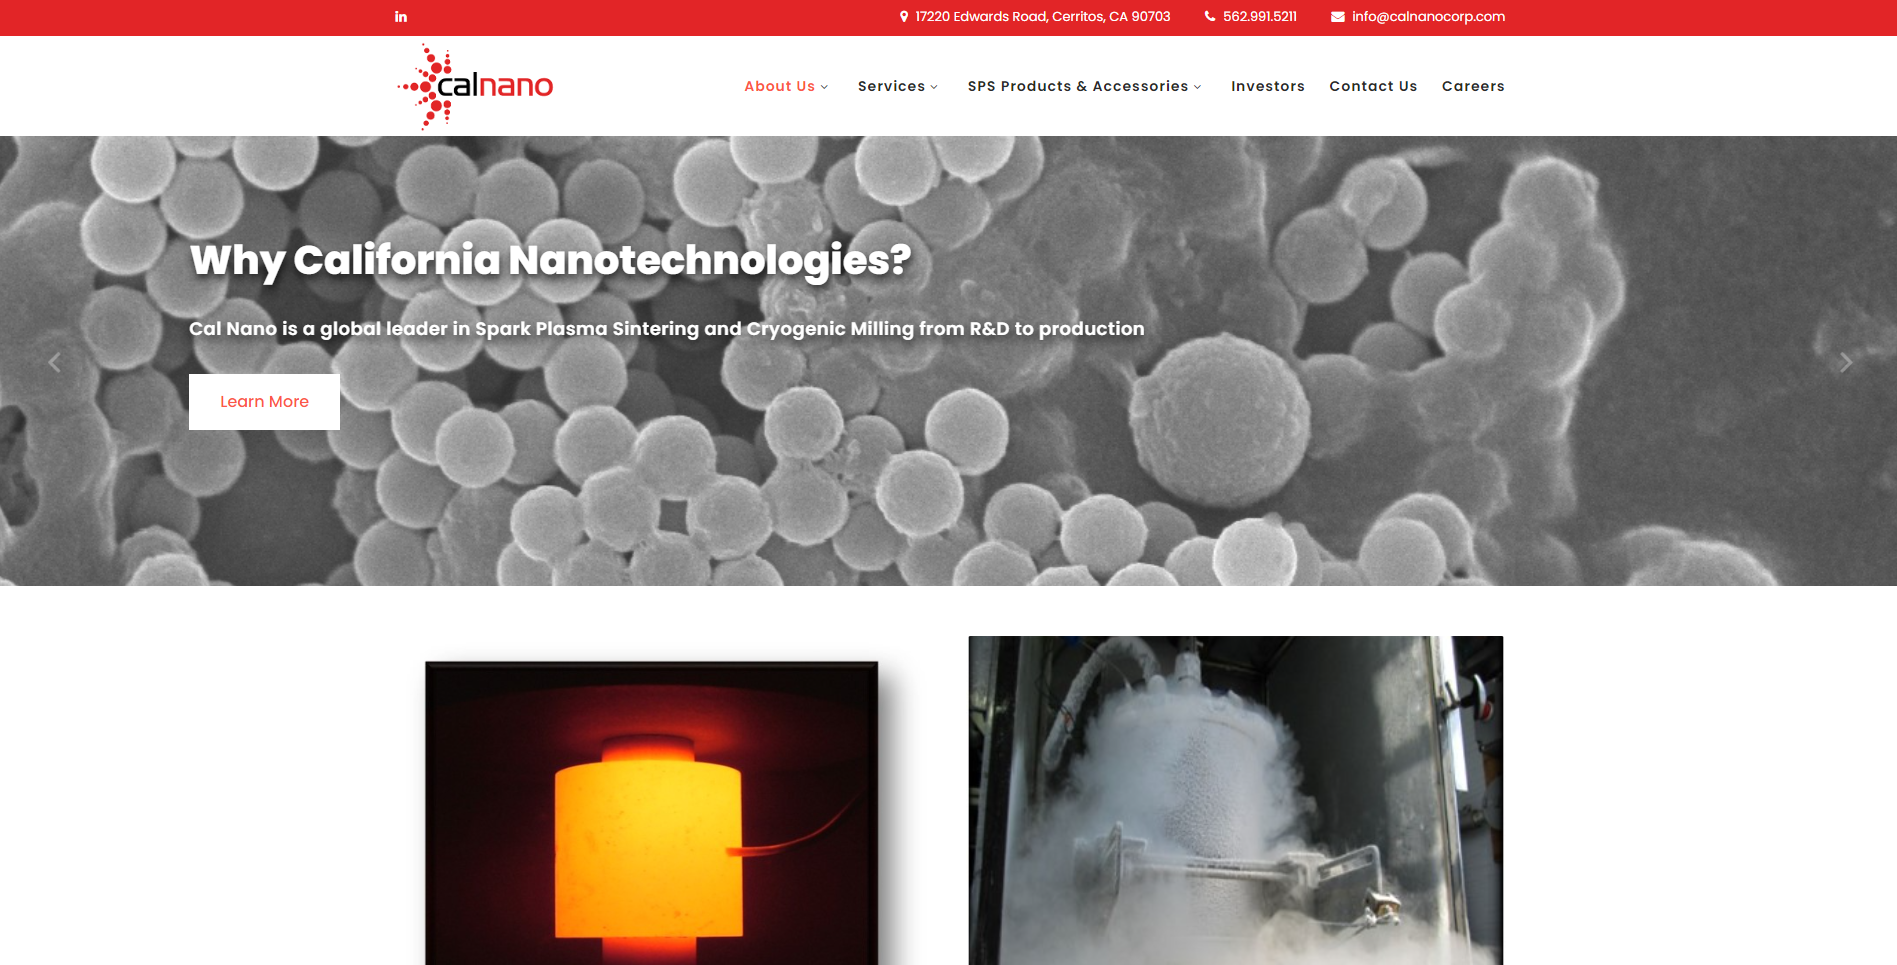 Web Design for Calnano Corporation